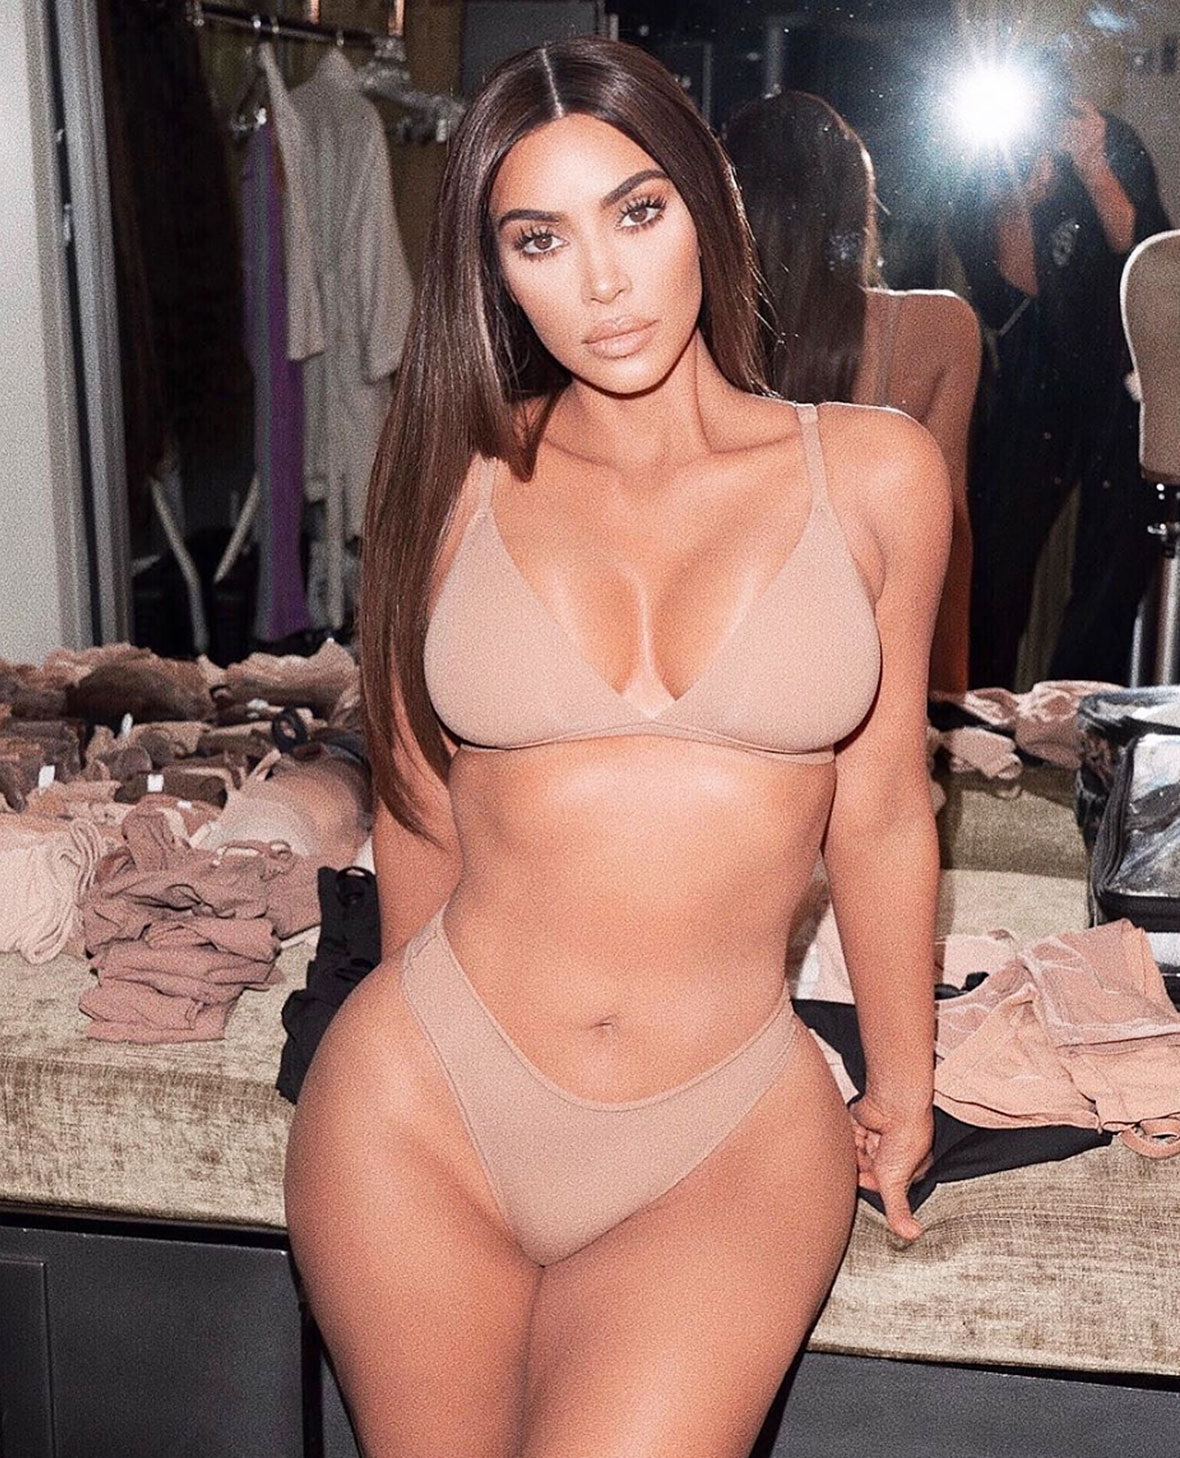 Kim Kardashian in Skims Bralette and Underwear Briefs photo image